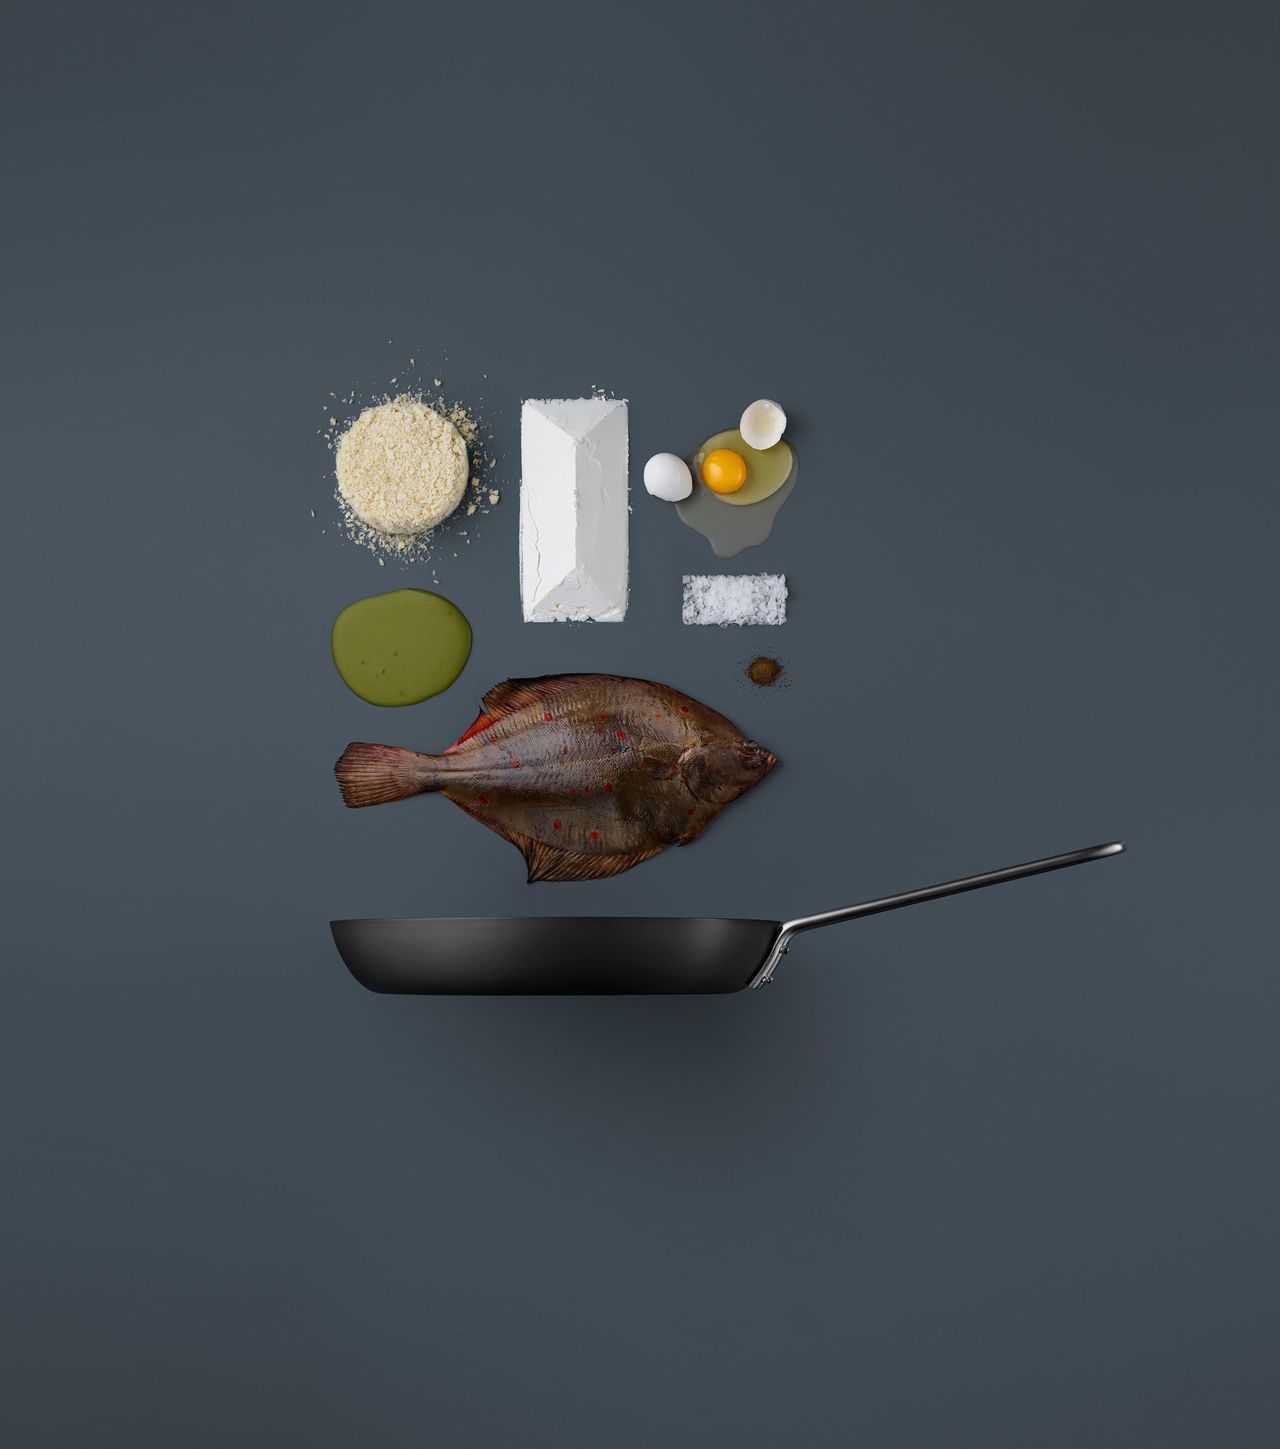 Oczywistym rozwiązaniem byłoby pokazanie gotowego dania, jednak nie jest to książka kucharska, a raczej projekt artystyczny - mówi Mikkel.